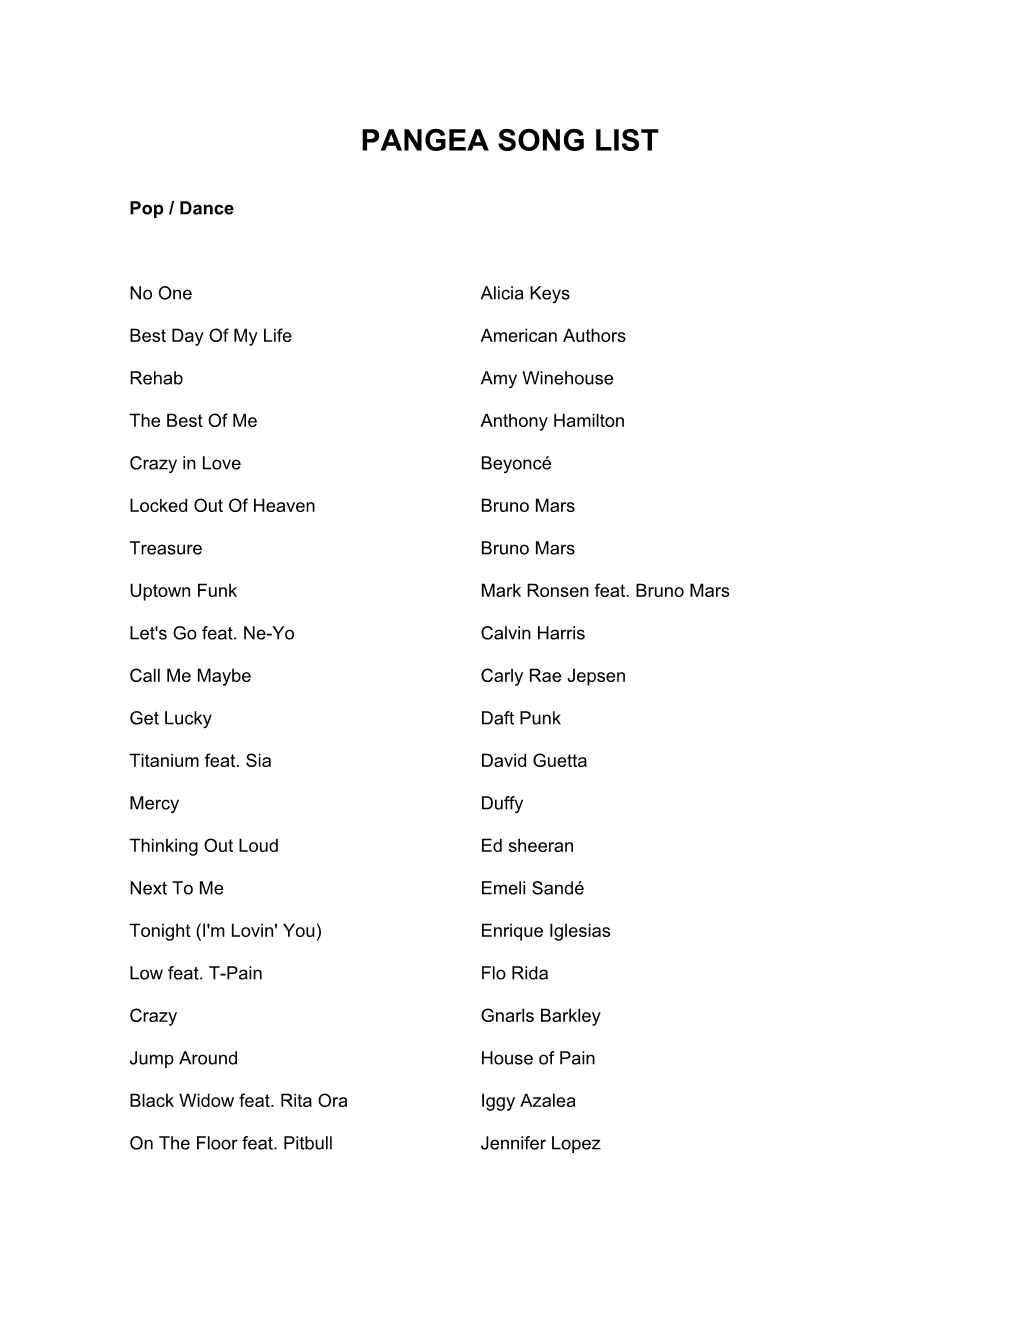 Pangea Song List